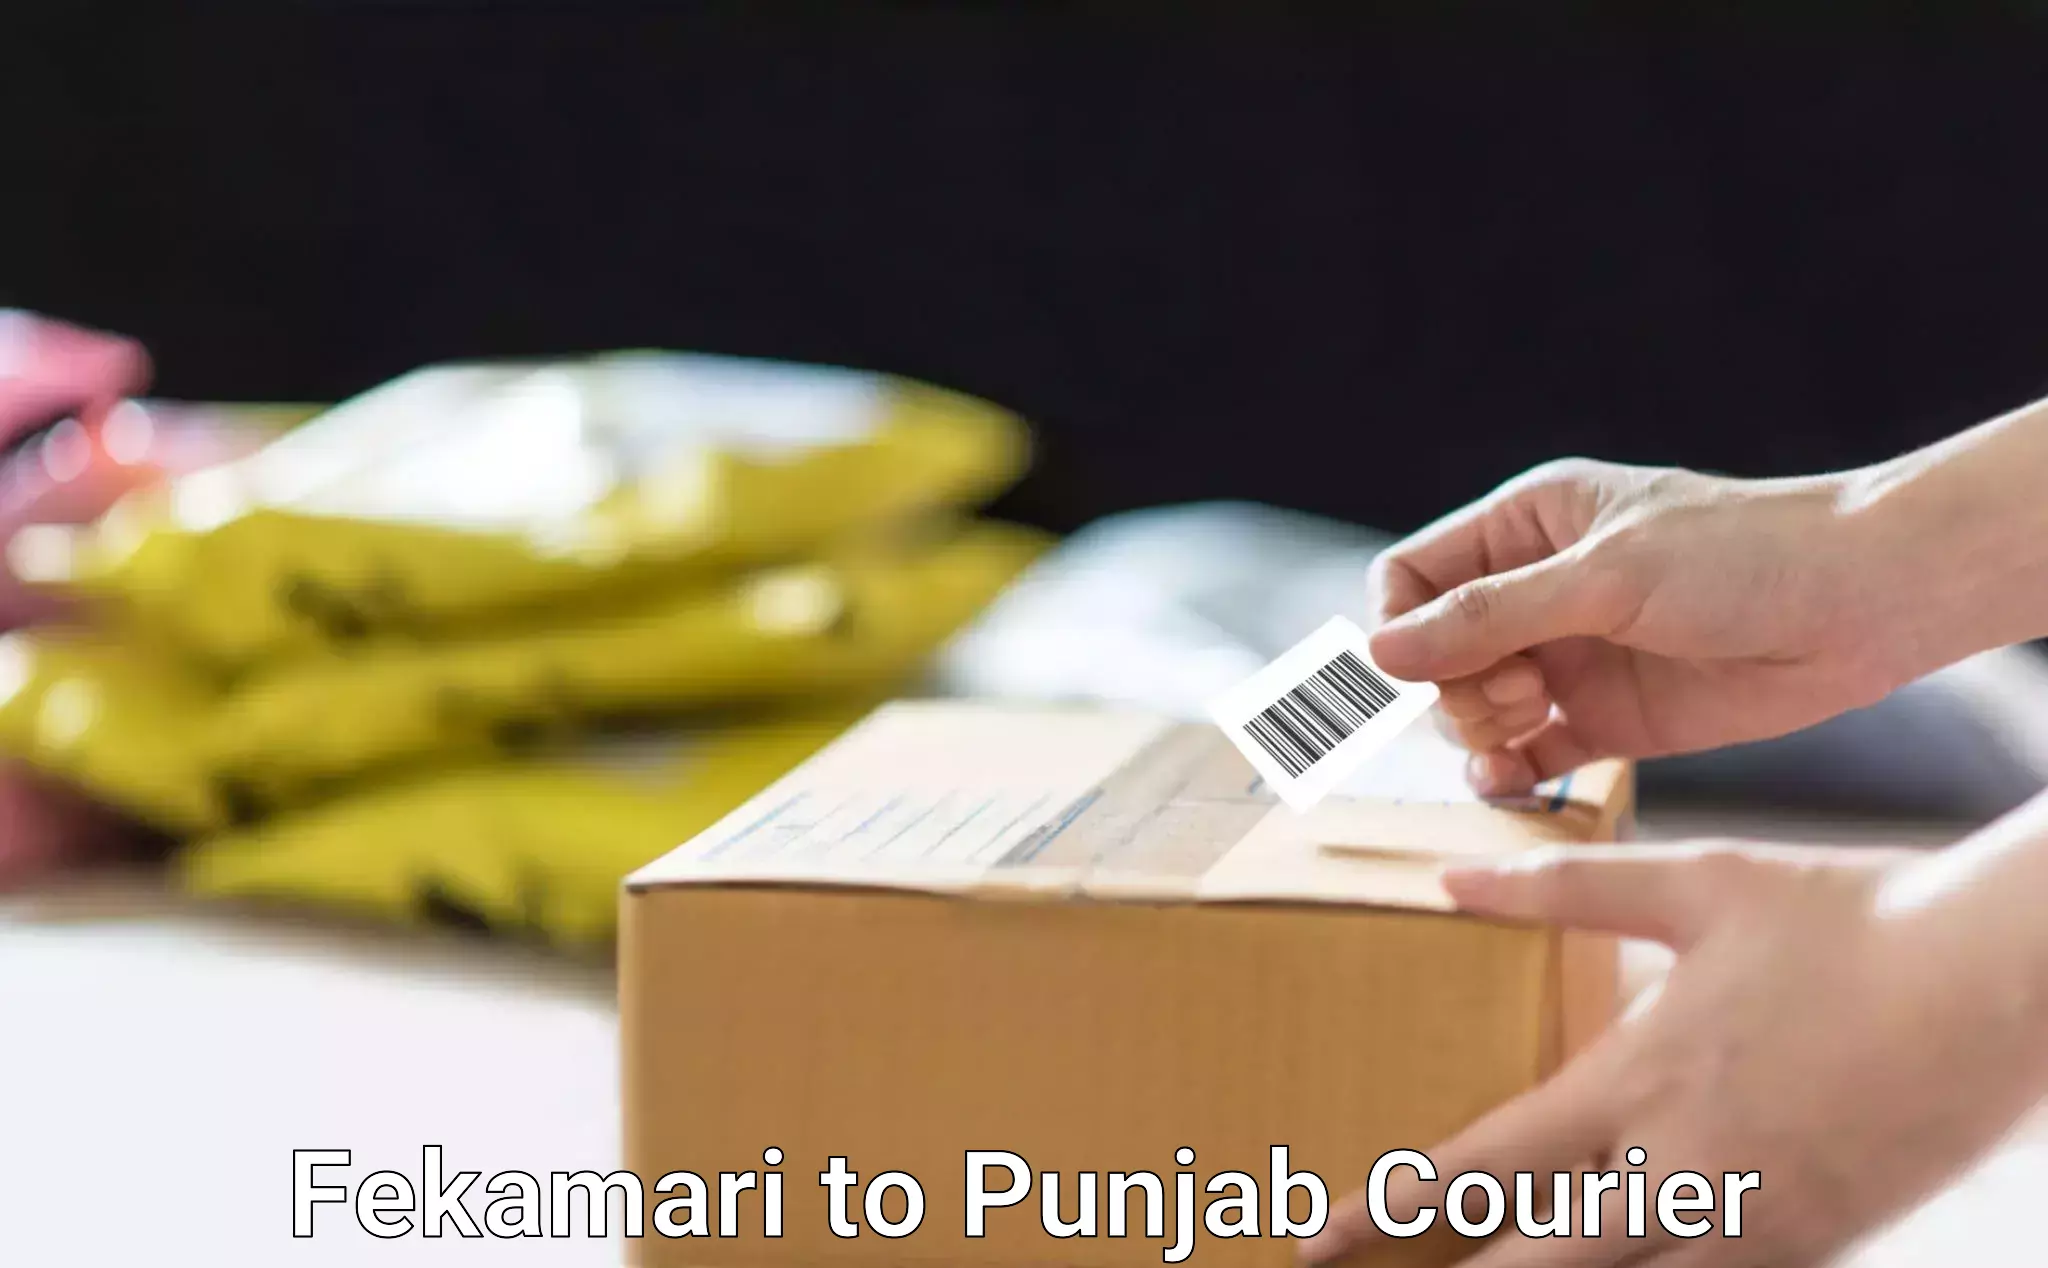 Nationwide shipping coverage Fekamari to Punjab